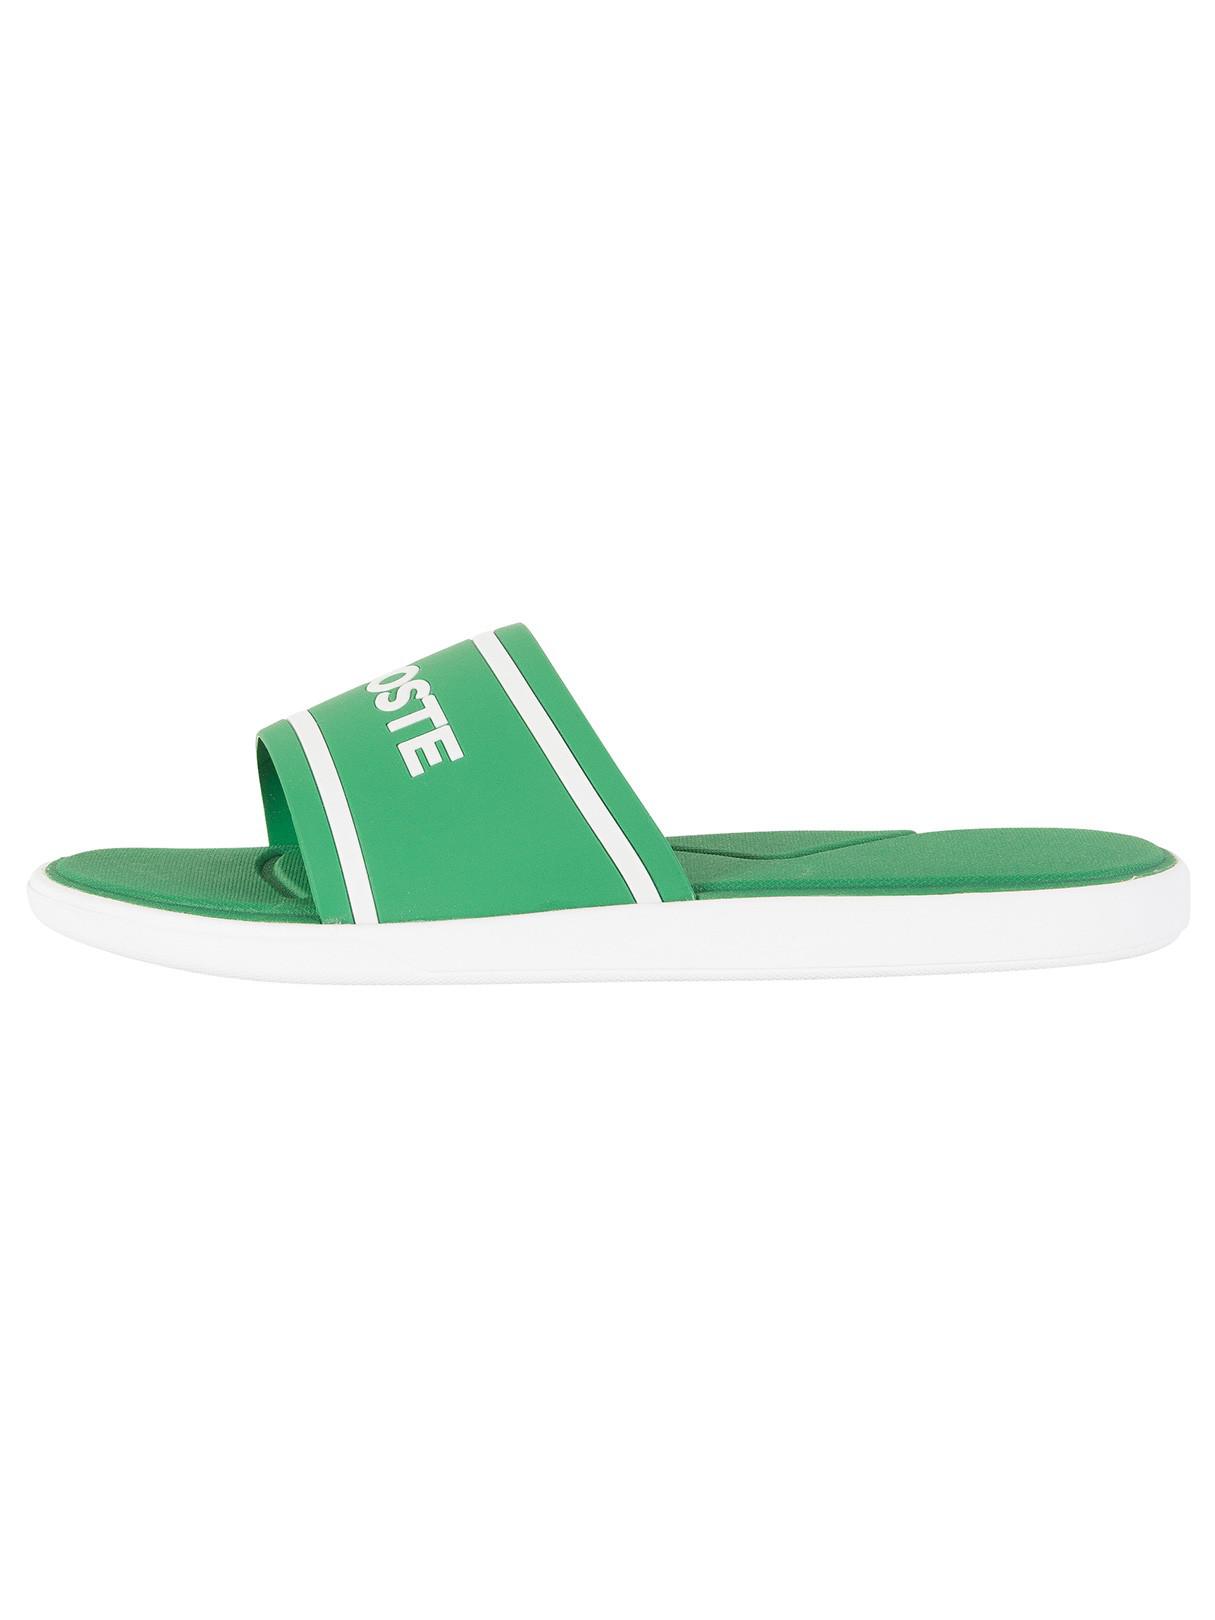 Lacoste Green/white L.30 Slide 118 3 Cam Flip Flops for Men | Lyst